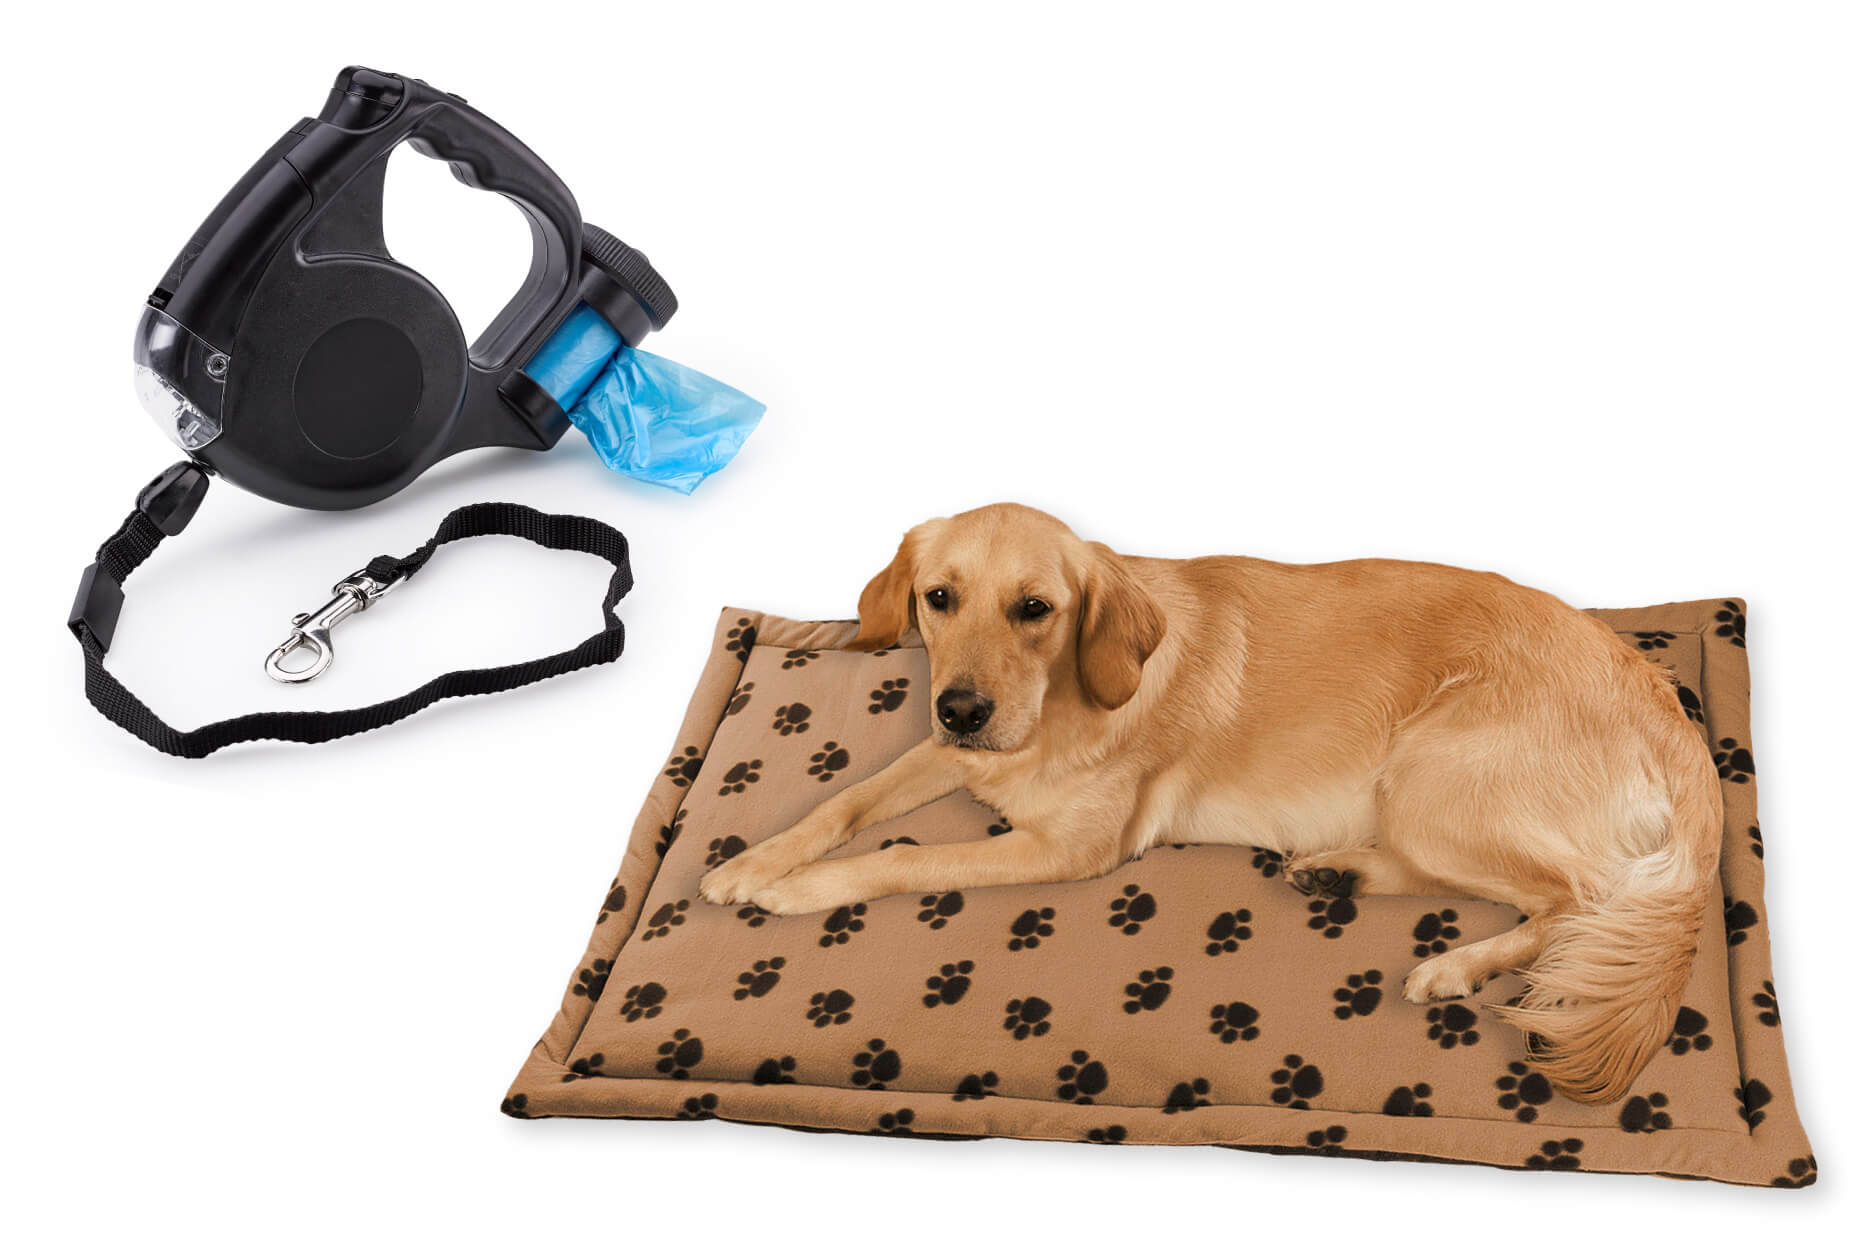 Bester-Freund Set für Ihren Hund mit gemütlicher Decke und praktischer Hundeleine mit LED-Licht